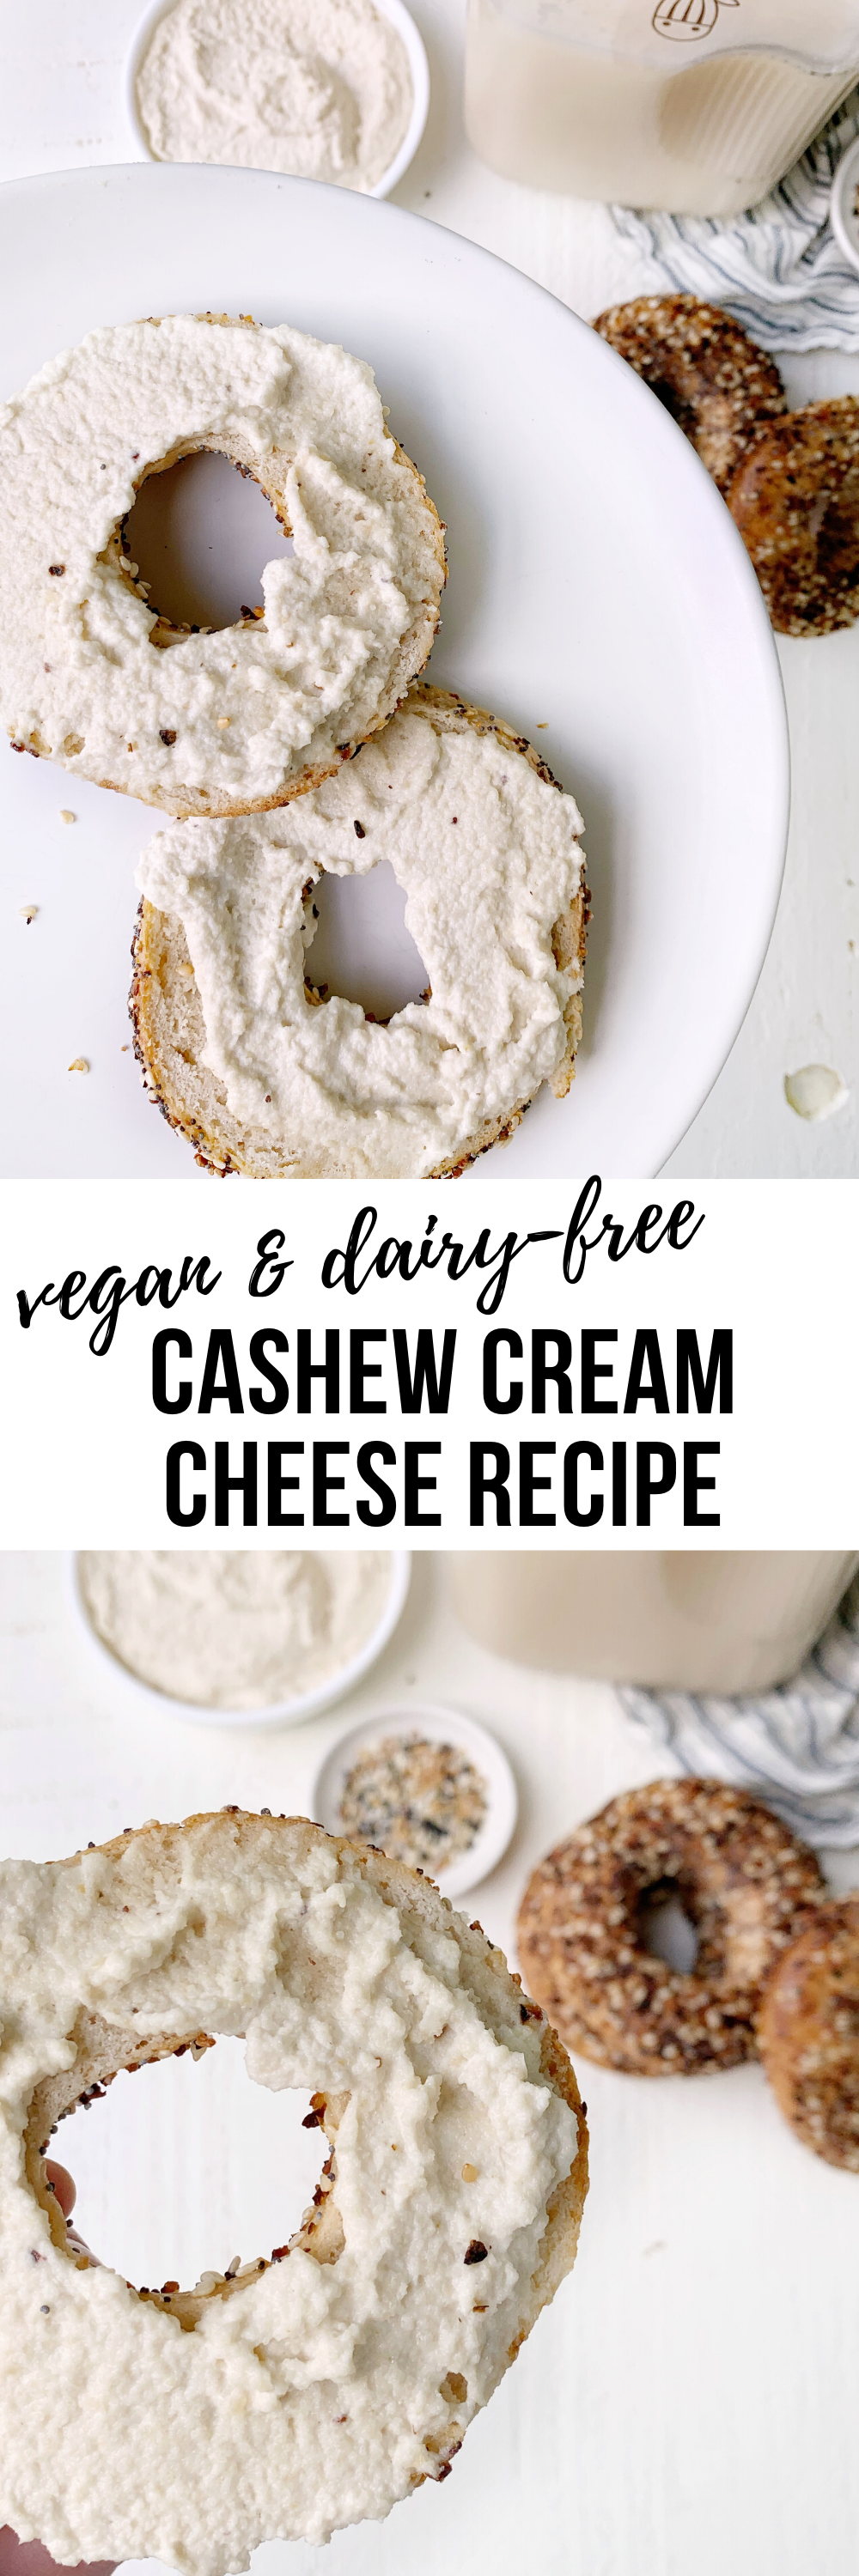 Cashew Cream Cheese Recipe Vegan Gluten Free